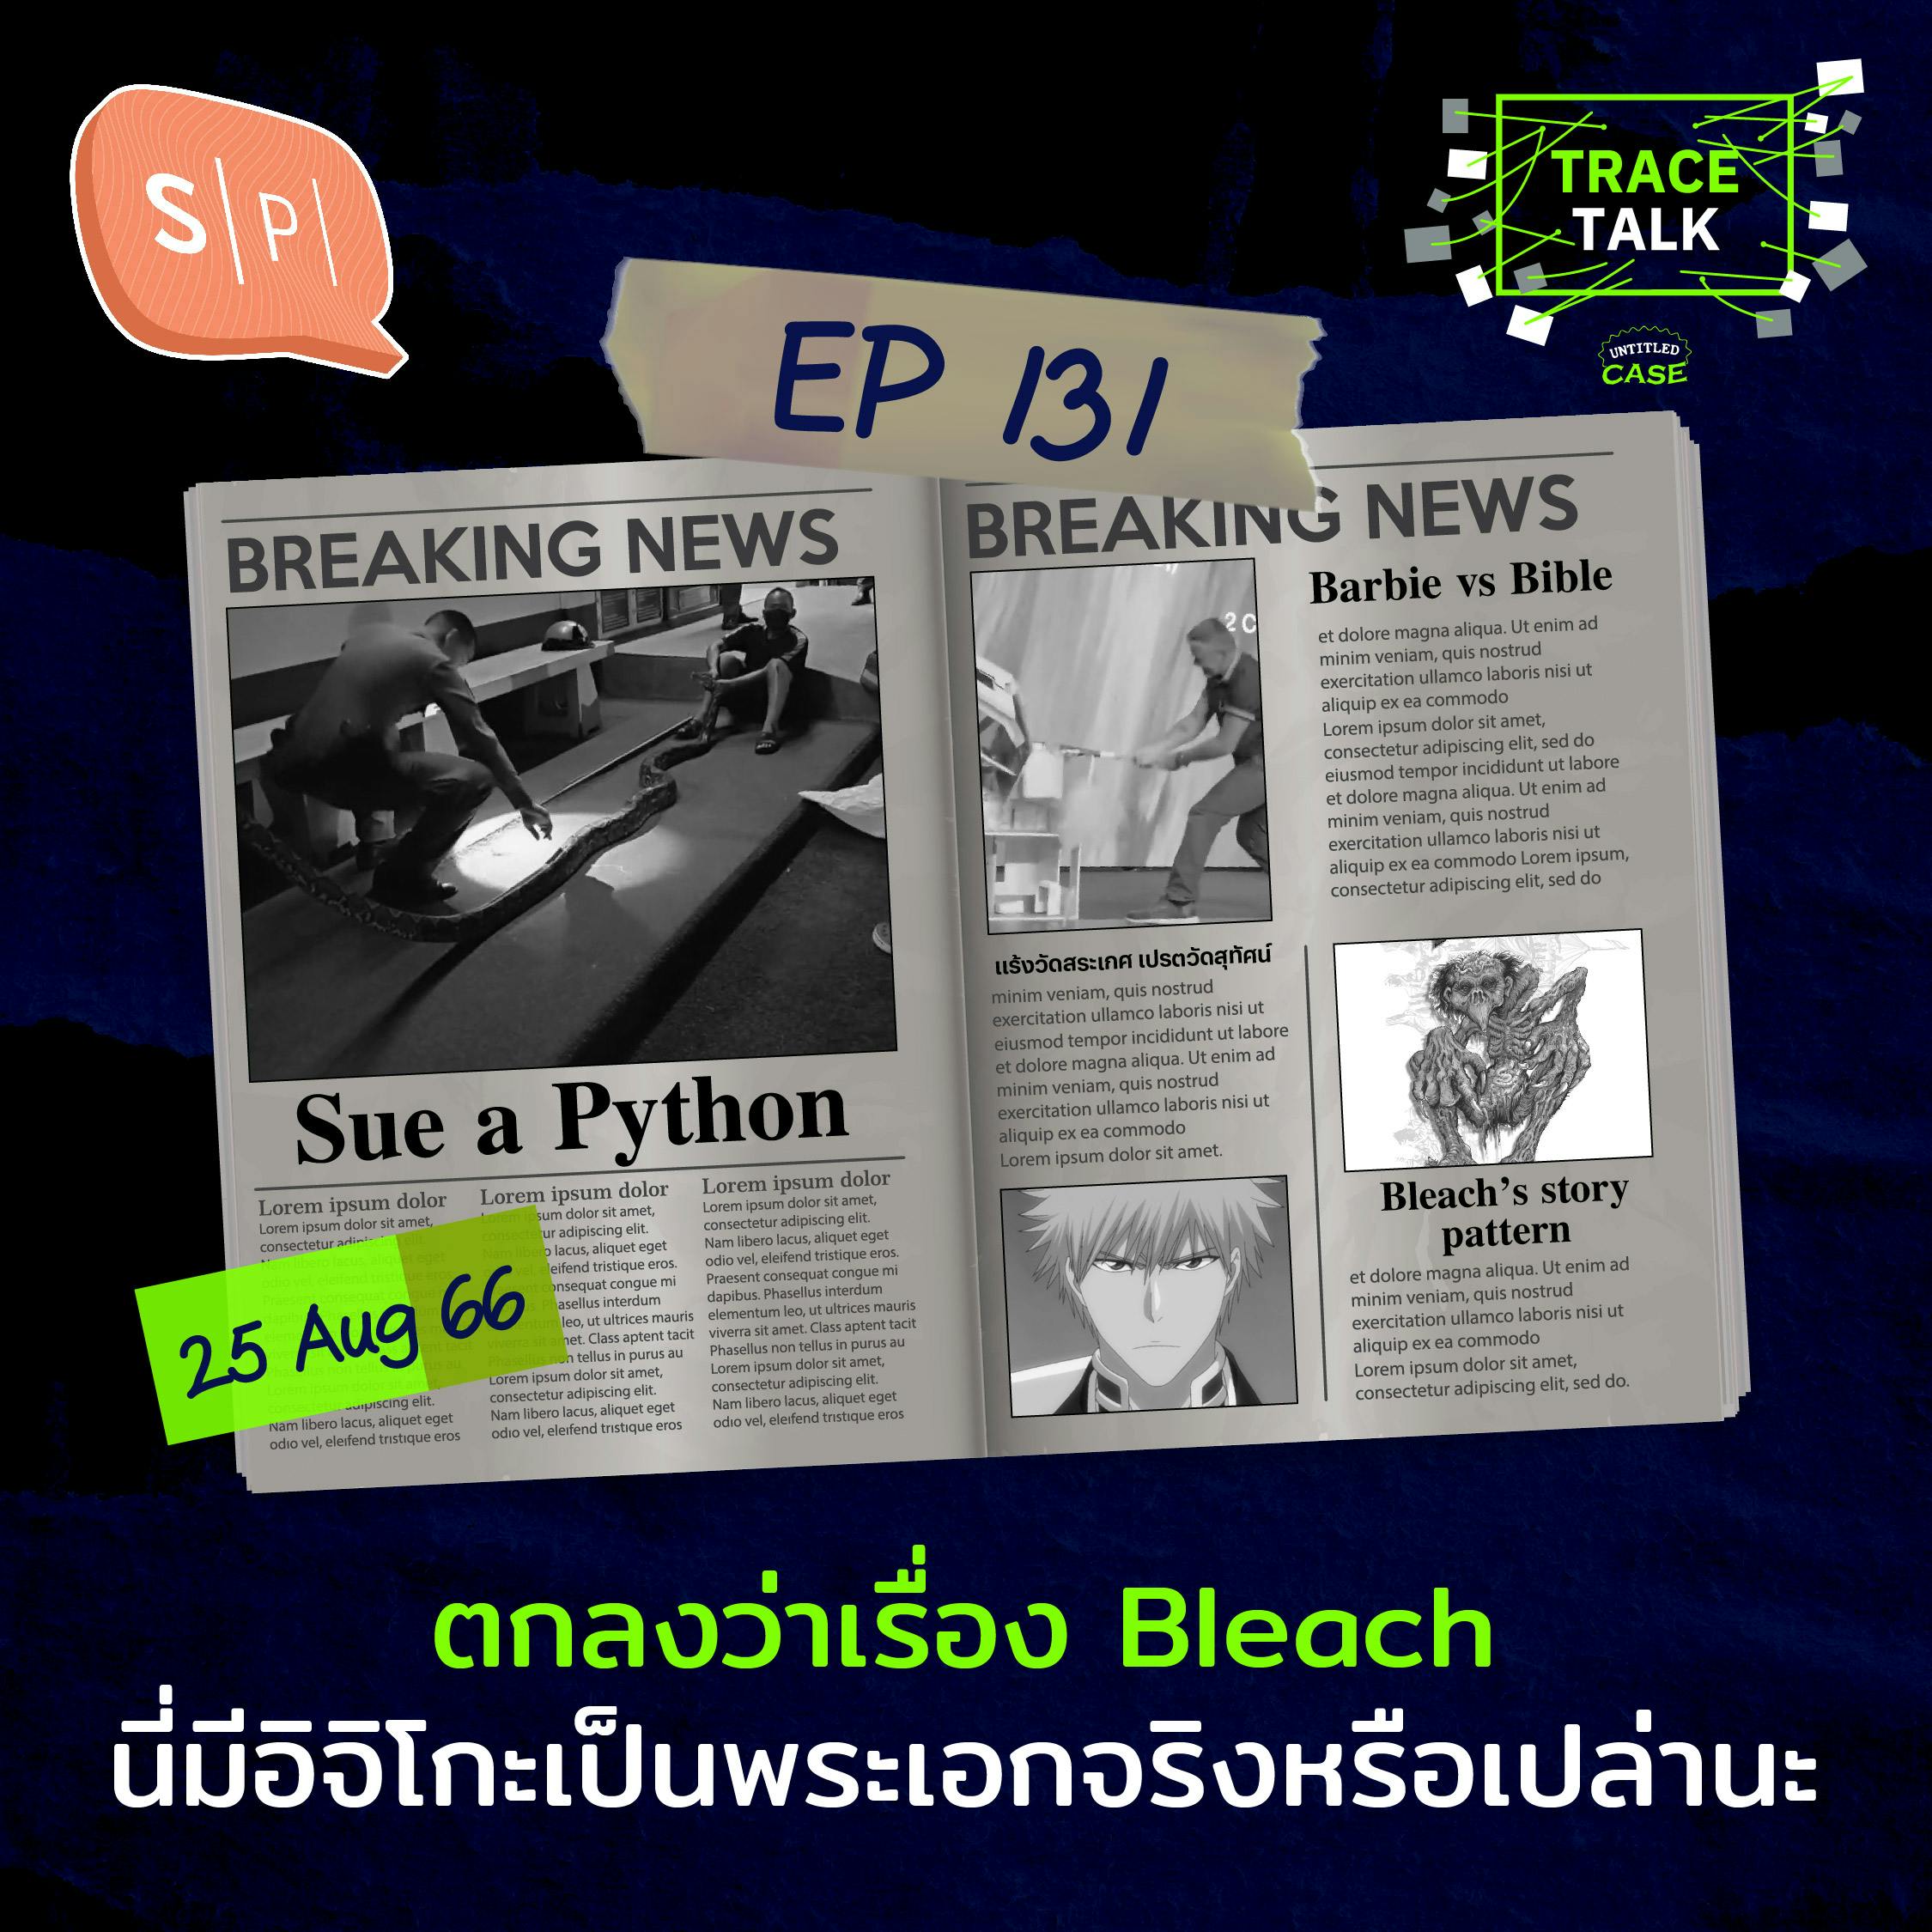 ตกลงว่าเรื่อง Bleach นี่มีอิจิโกะเป็นพระเอกจริงหรือเปล่านะ | Trace Talk EP131